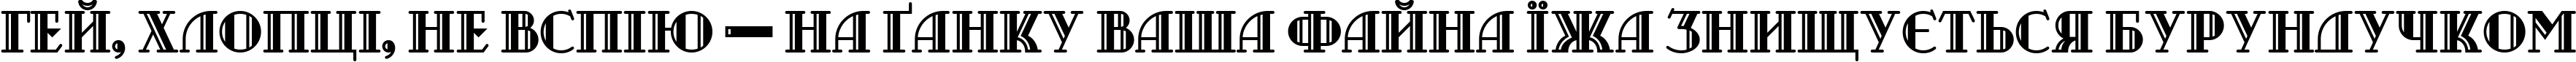 Пример написания шрифтом Castileo Medium текста на украинском